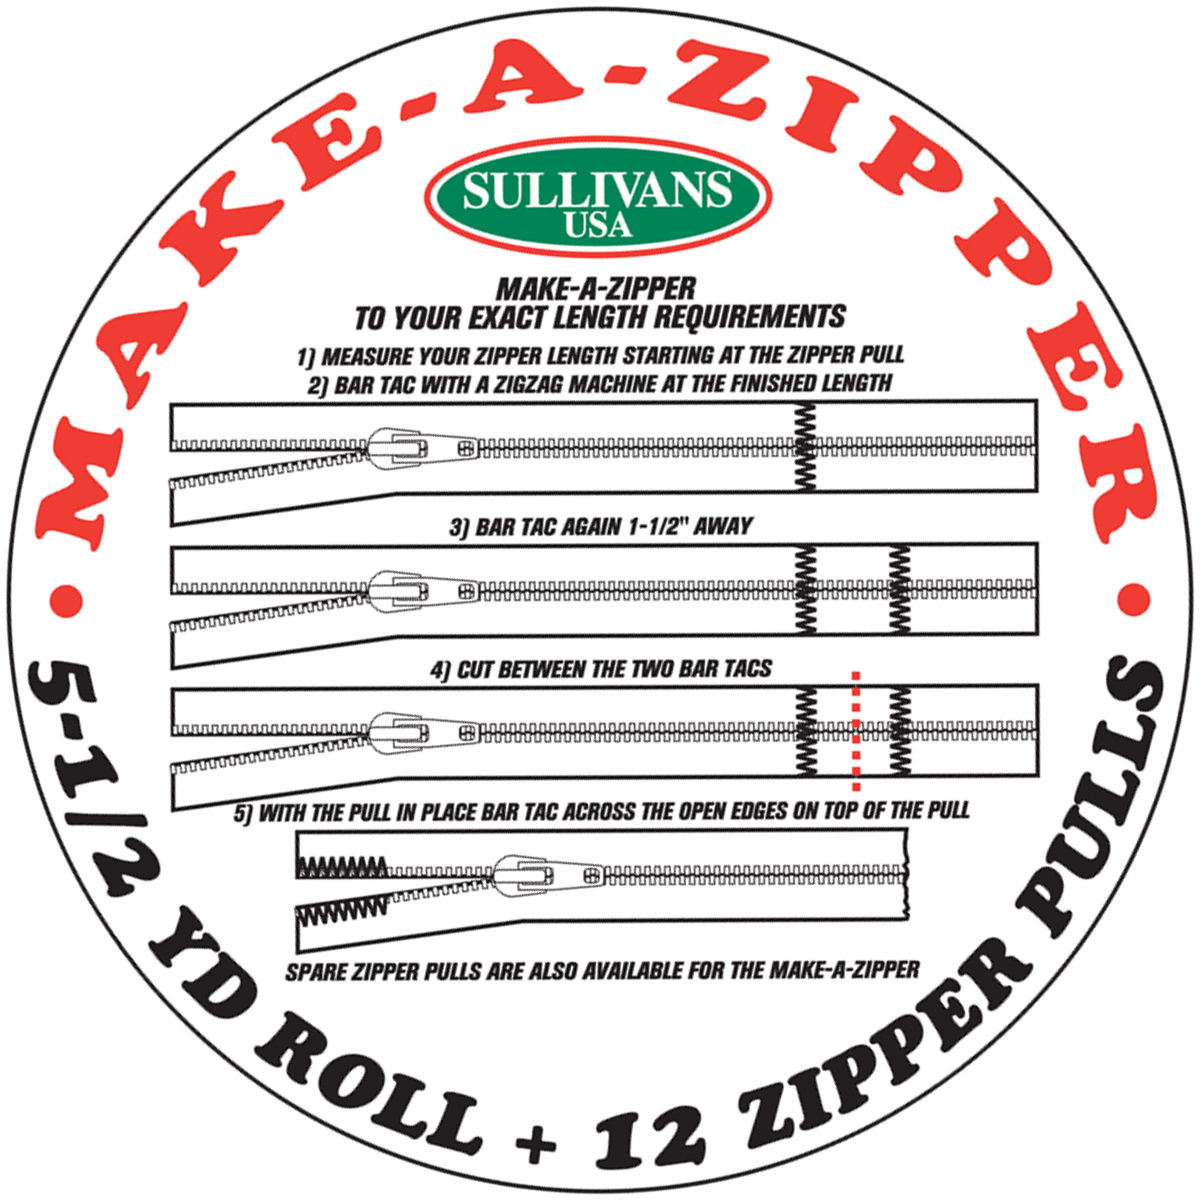 Make-A-Zipper - Sullivans USA